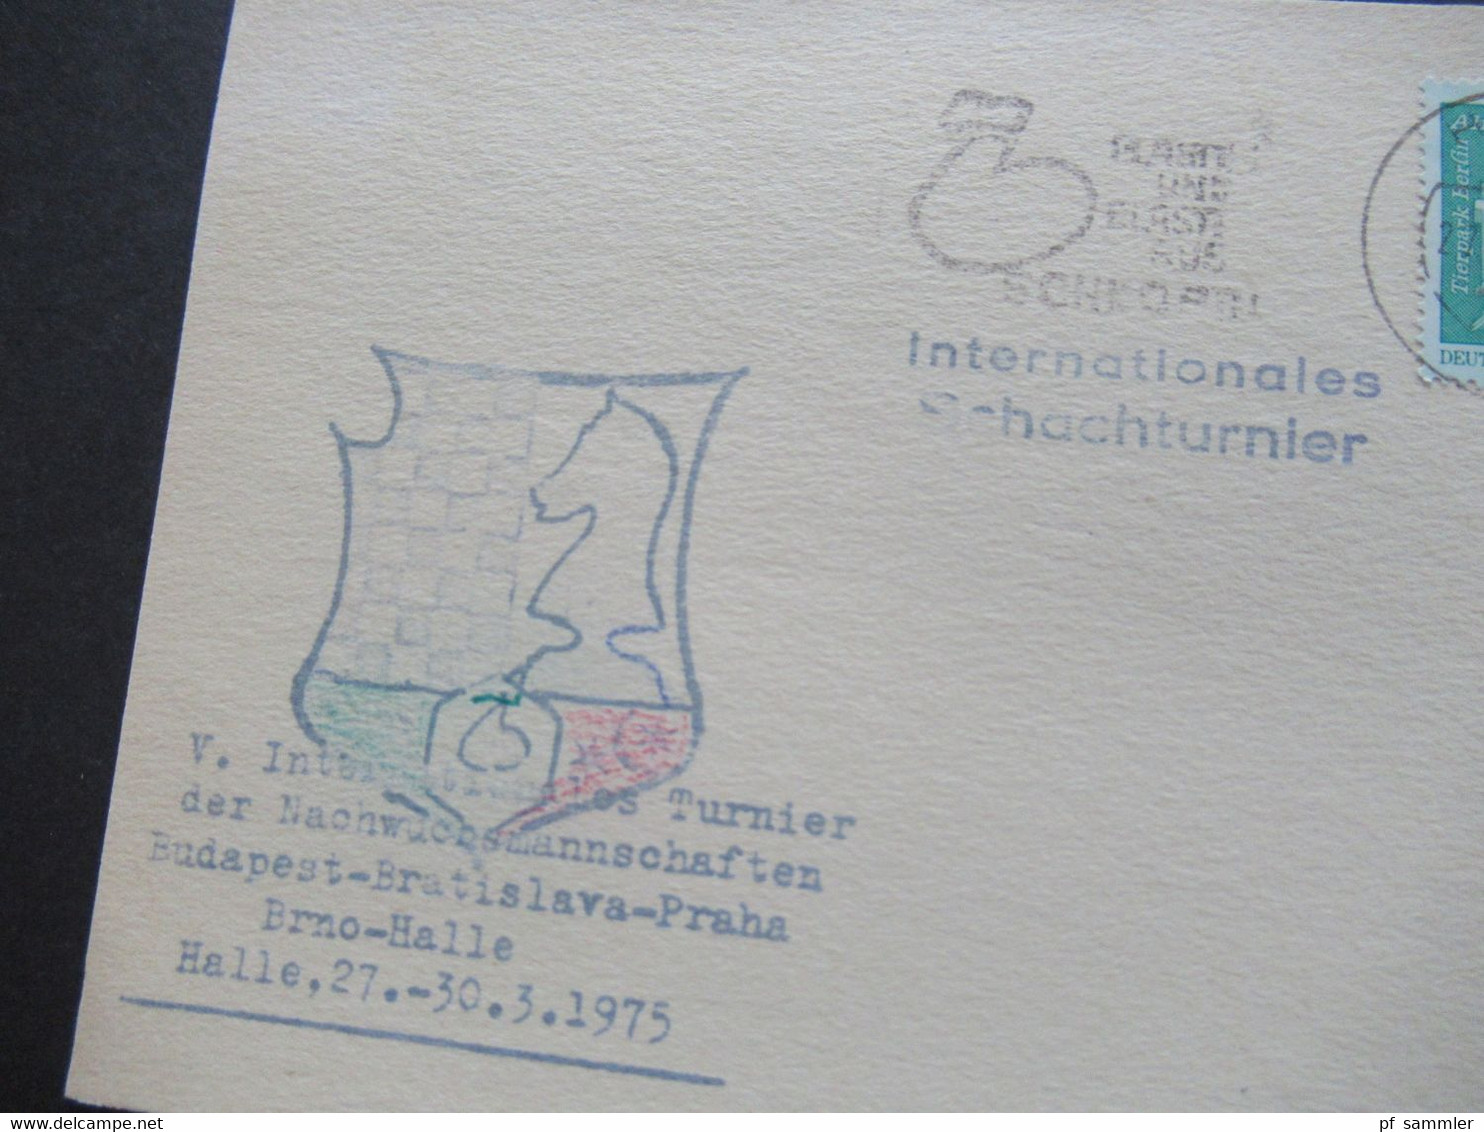 DDR 1975 Sonderkarte Internationales Schachturnier Nachwuchsmannschafteb Budapest - Bratislava - Praha - Brno - Halle - Echecs